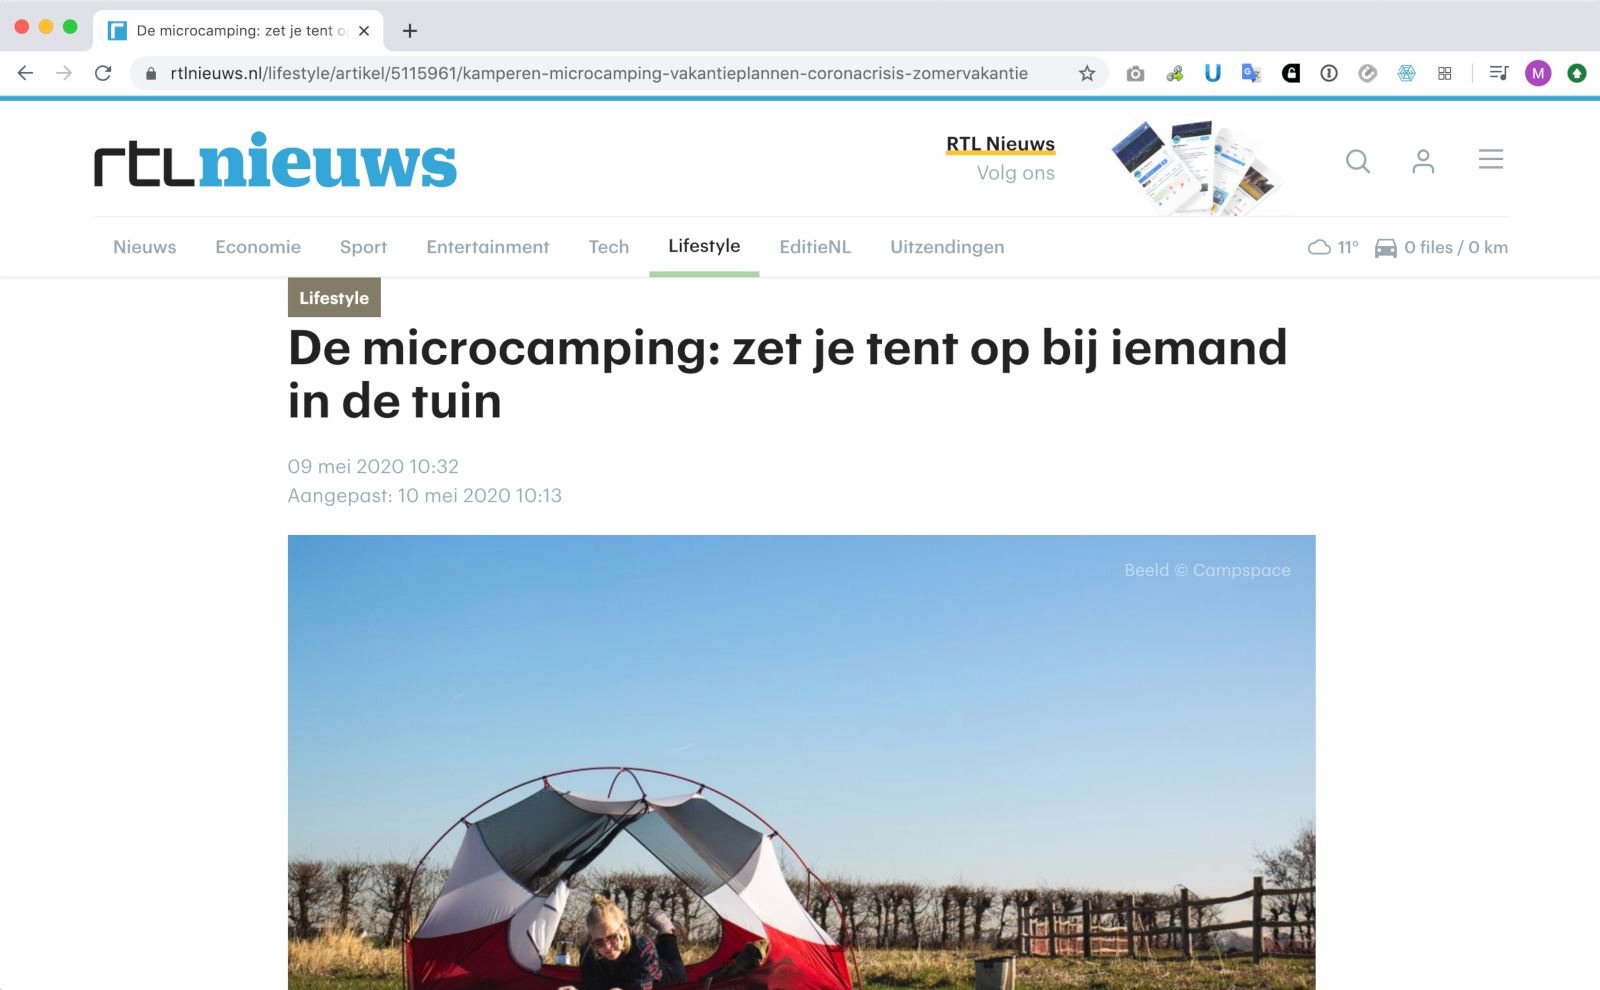 May 9, 2020 — RTL News on backyard camping